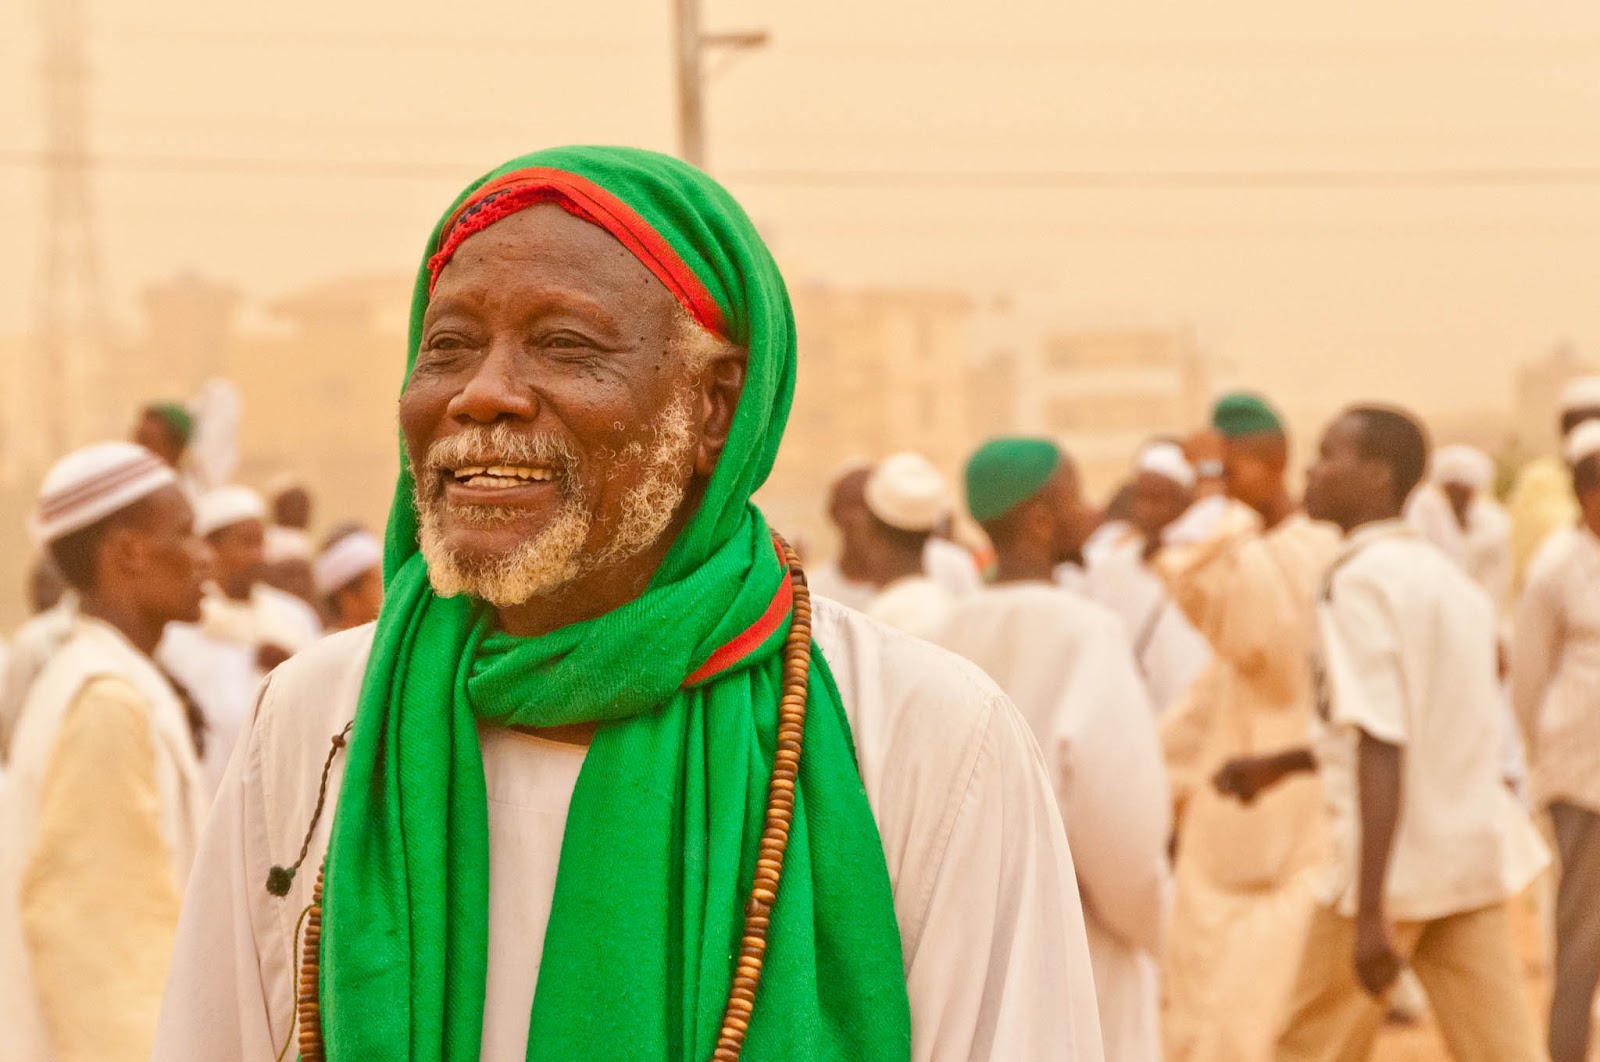 Beautiful Muslim's Pictures: Khartoum (Sudan) Sufi Muslim Dervishes